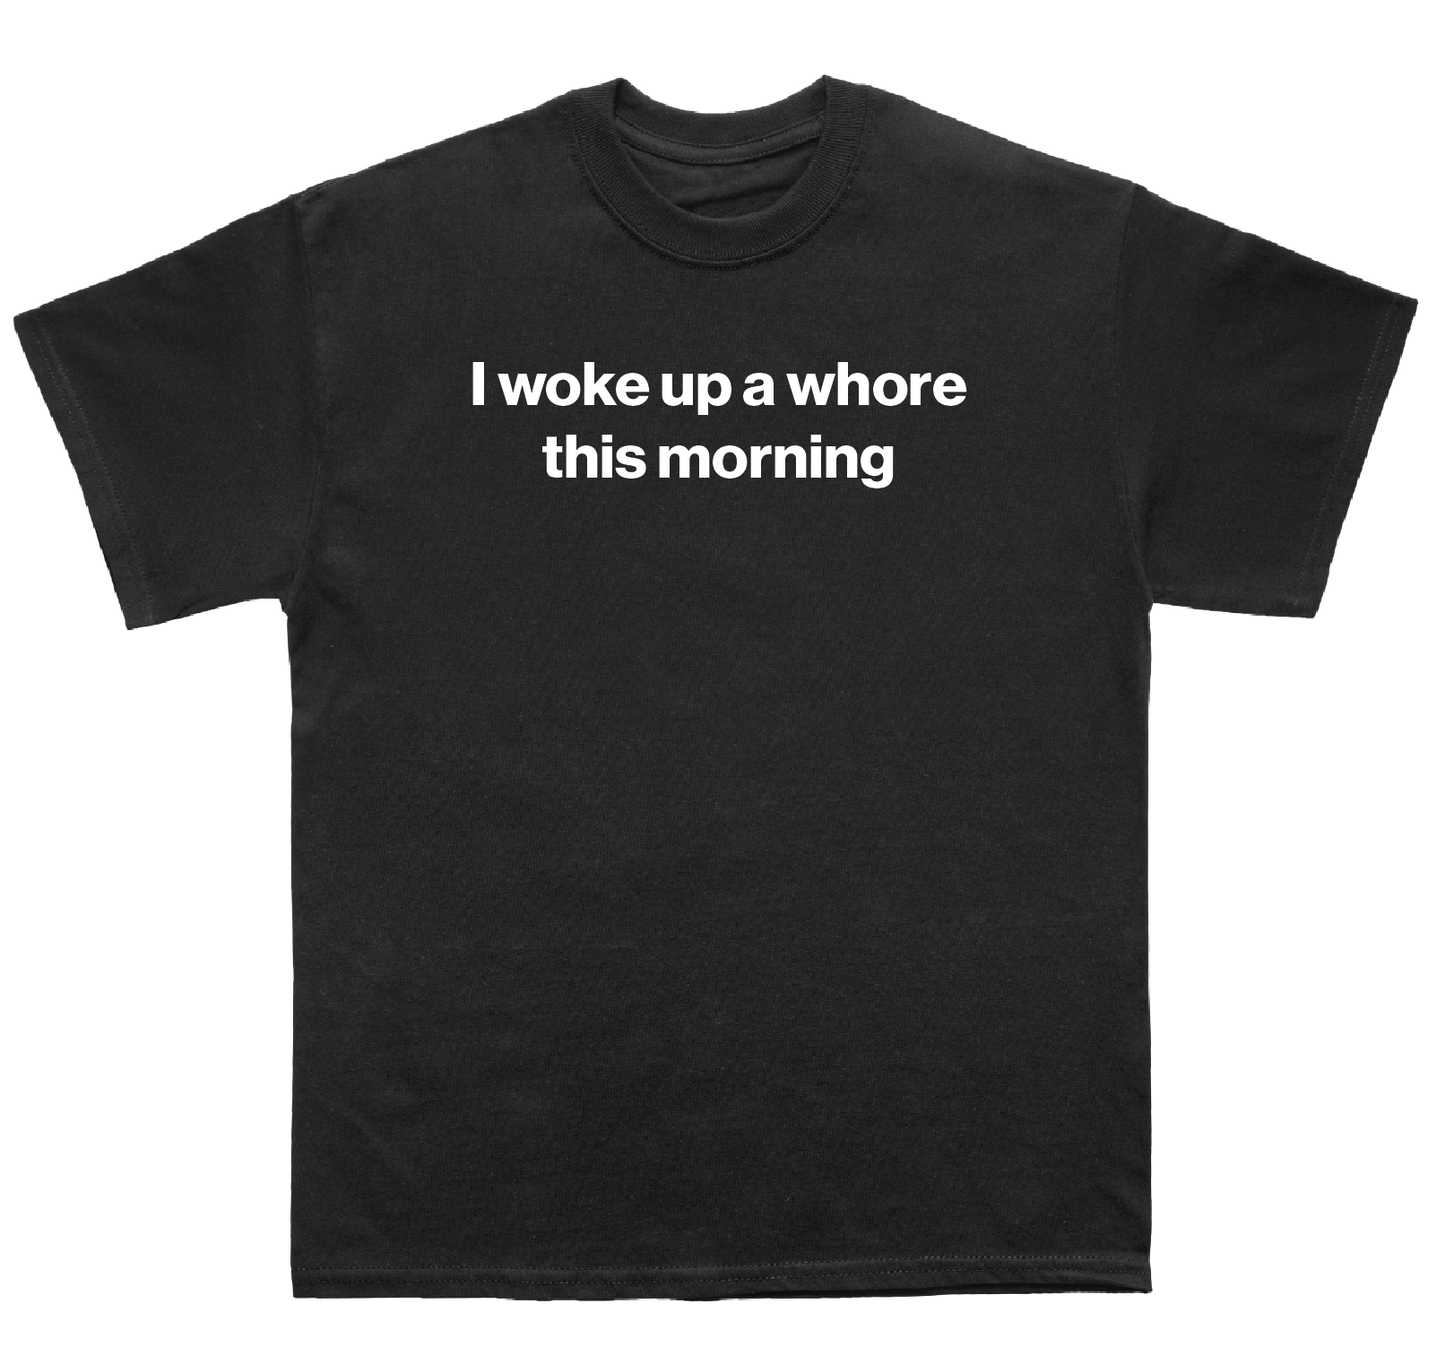 I woke up a whore this morning shirt